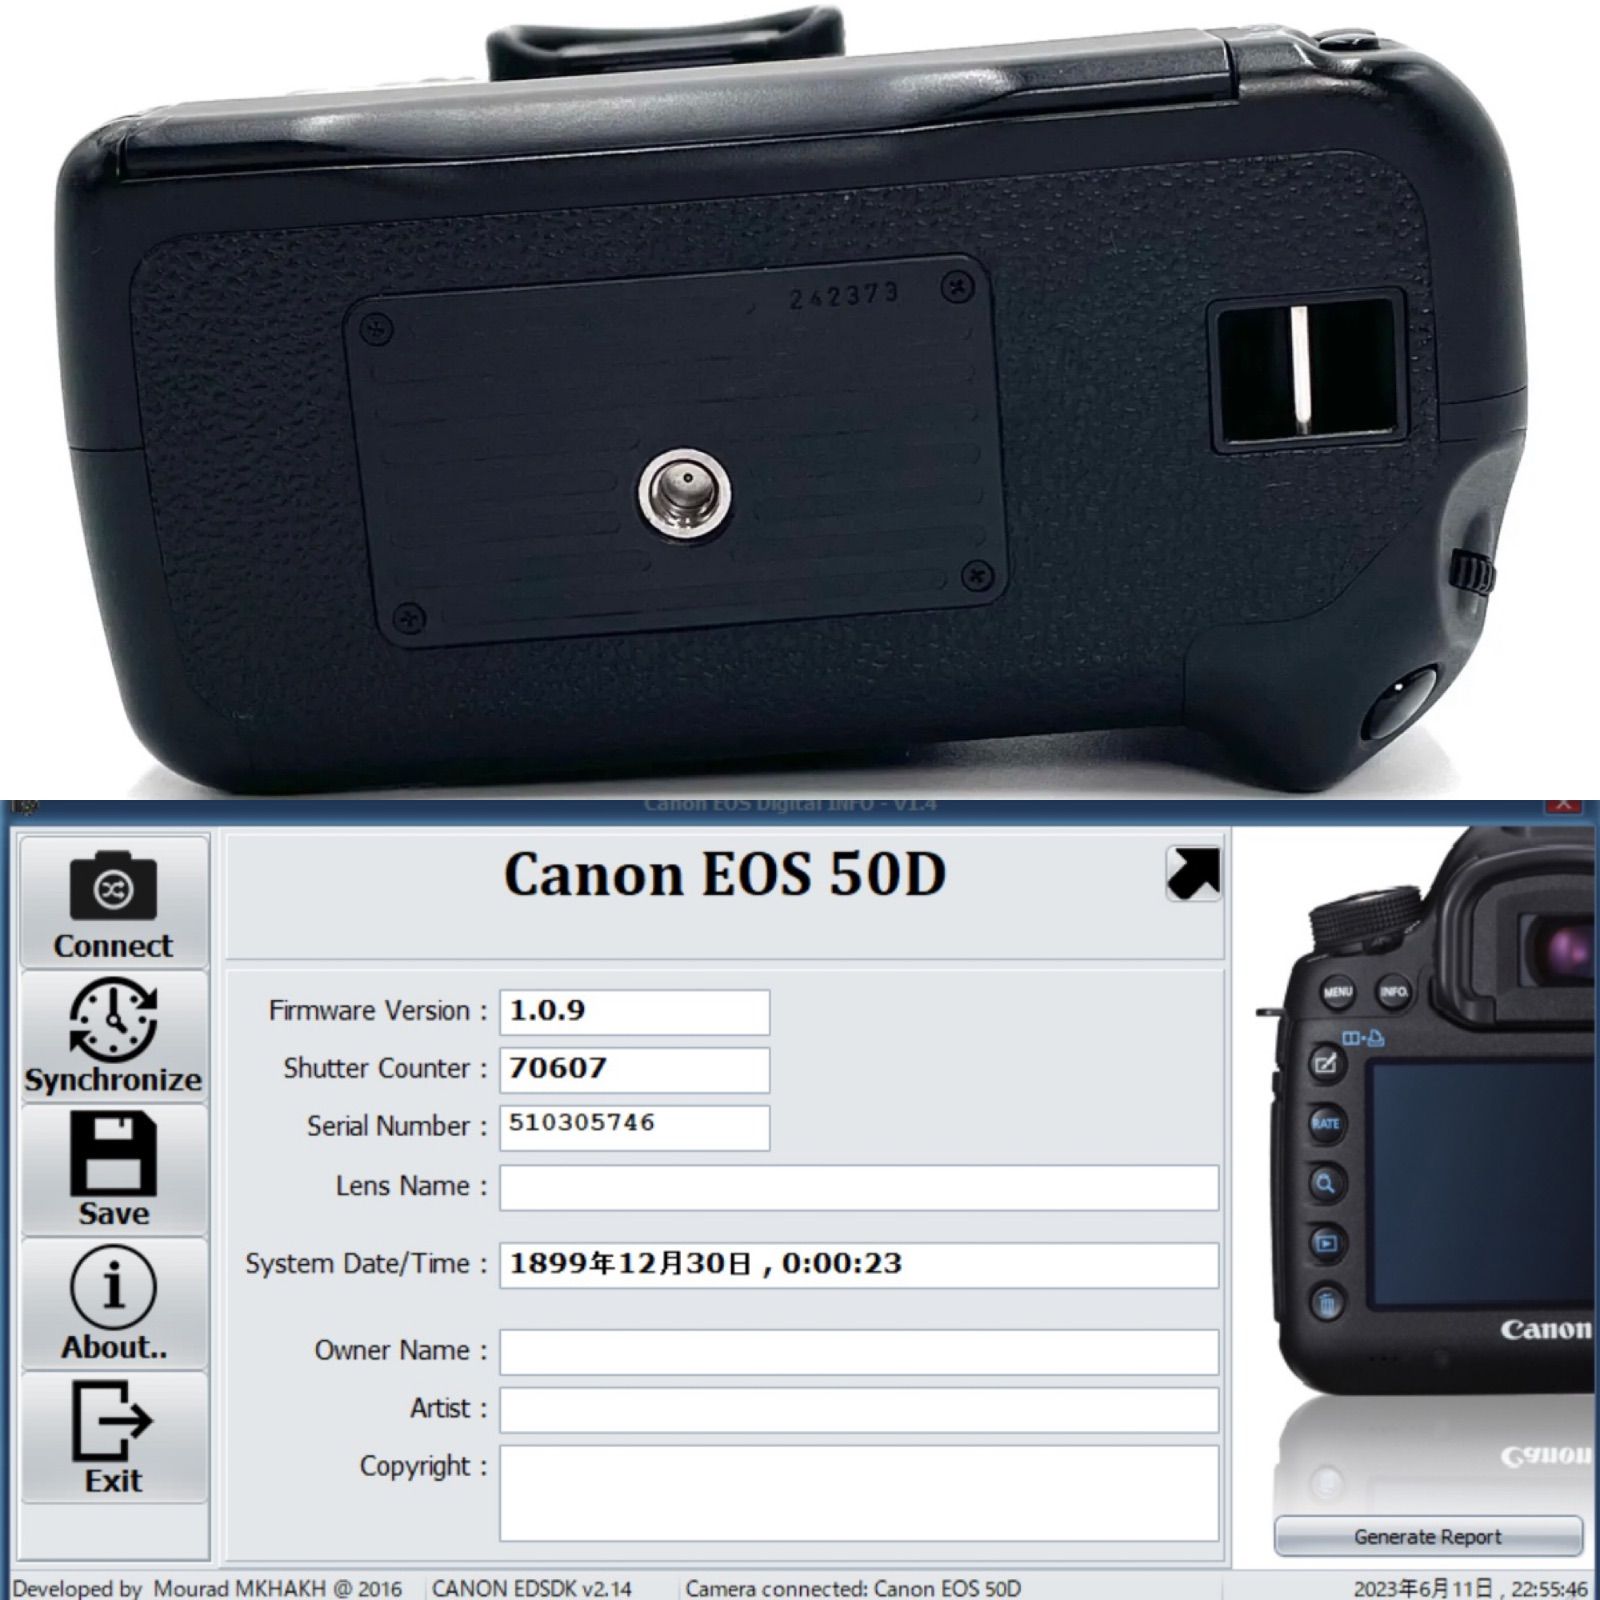 Canon キャノン EOS-50D デジタル一眼レフカメラ ブラックボディ バッテリーグリップ BG-E2 バッテリーパック総数5個 取扱説明書付き  シャッター数70607回 メルカリShops